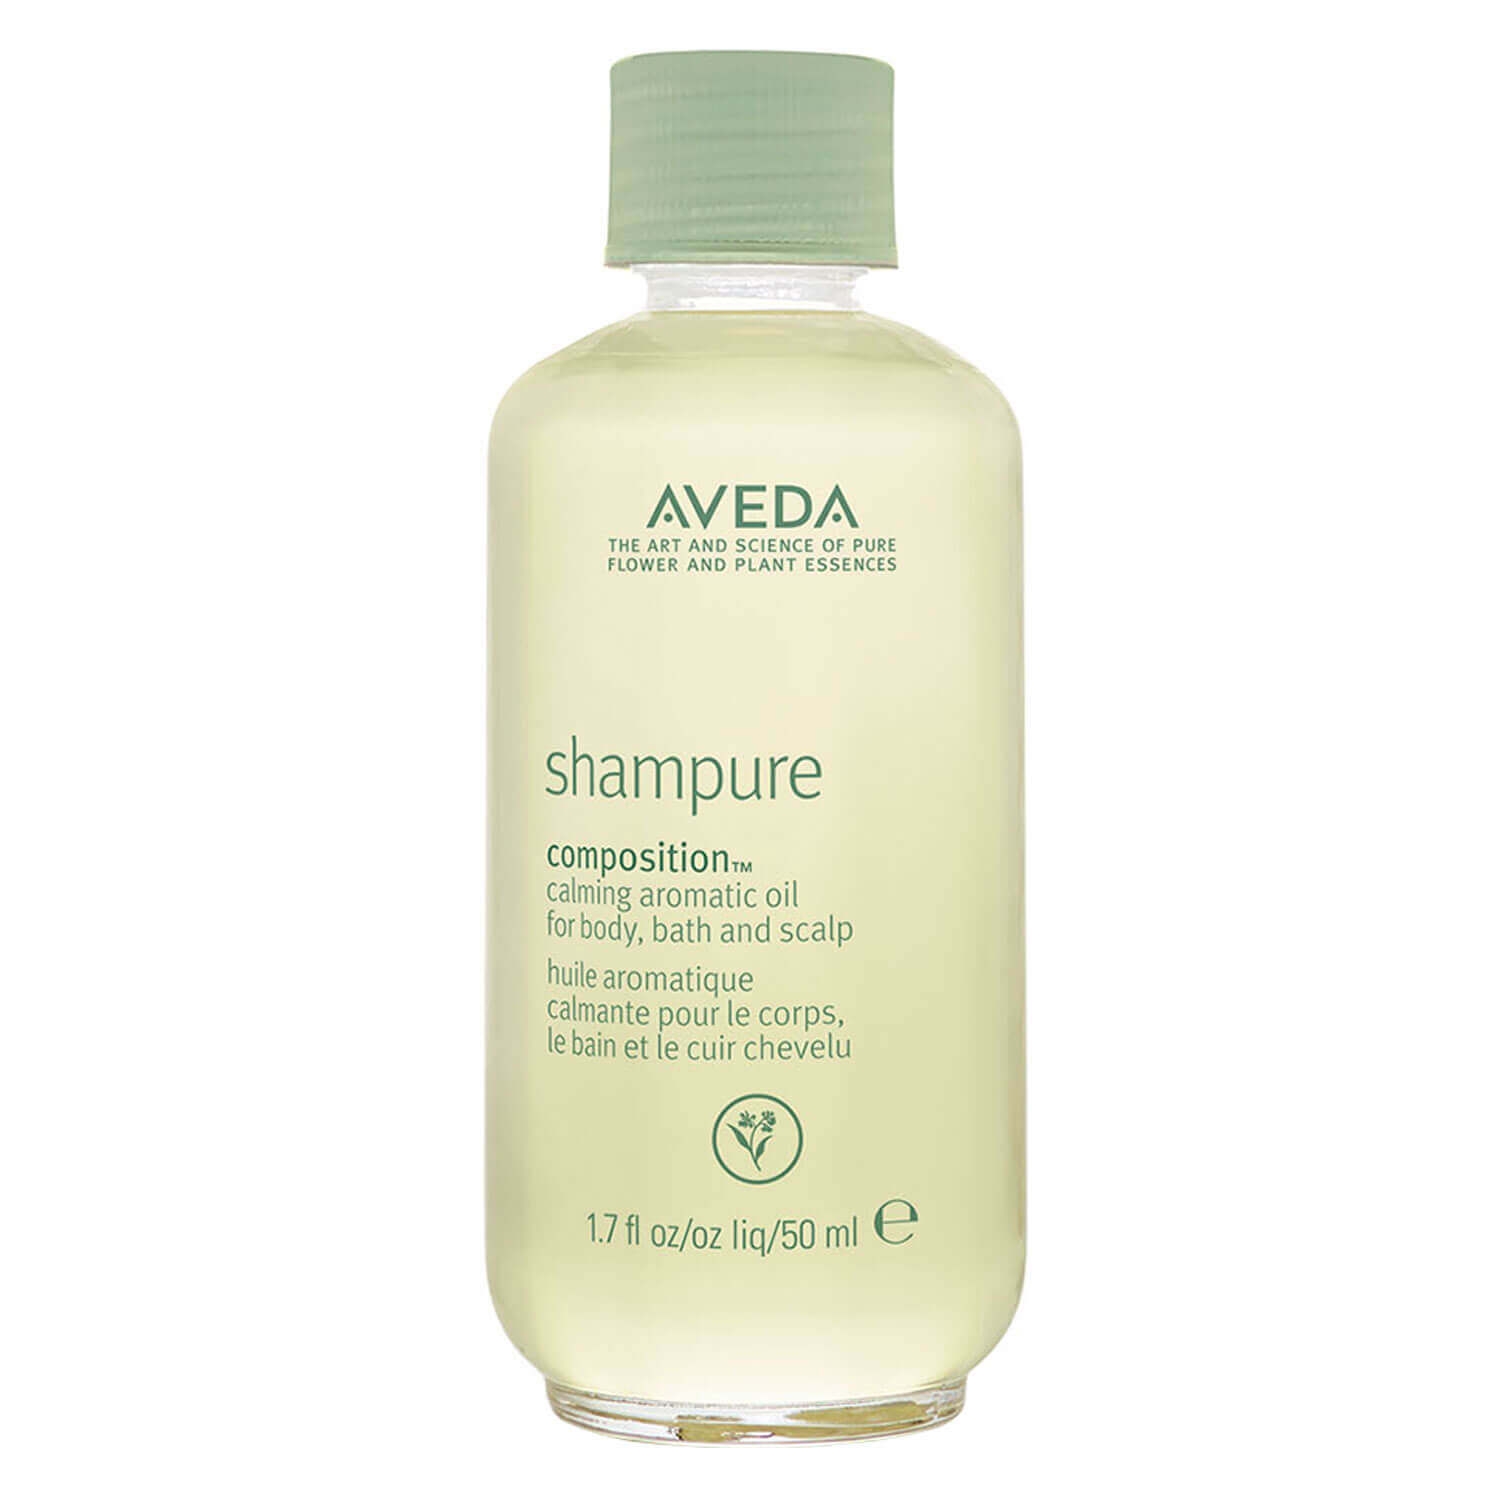 Produktbild von shampure - composition oil